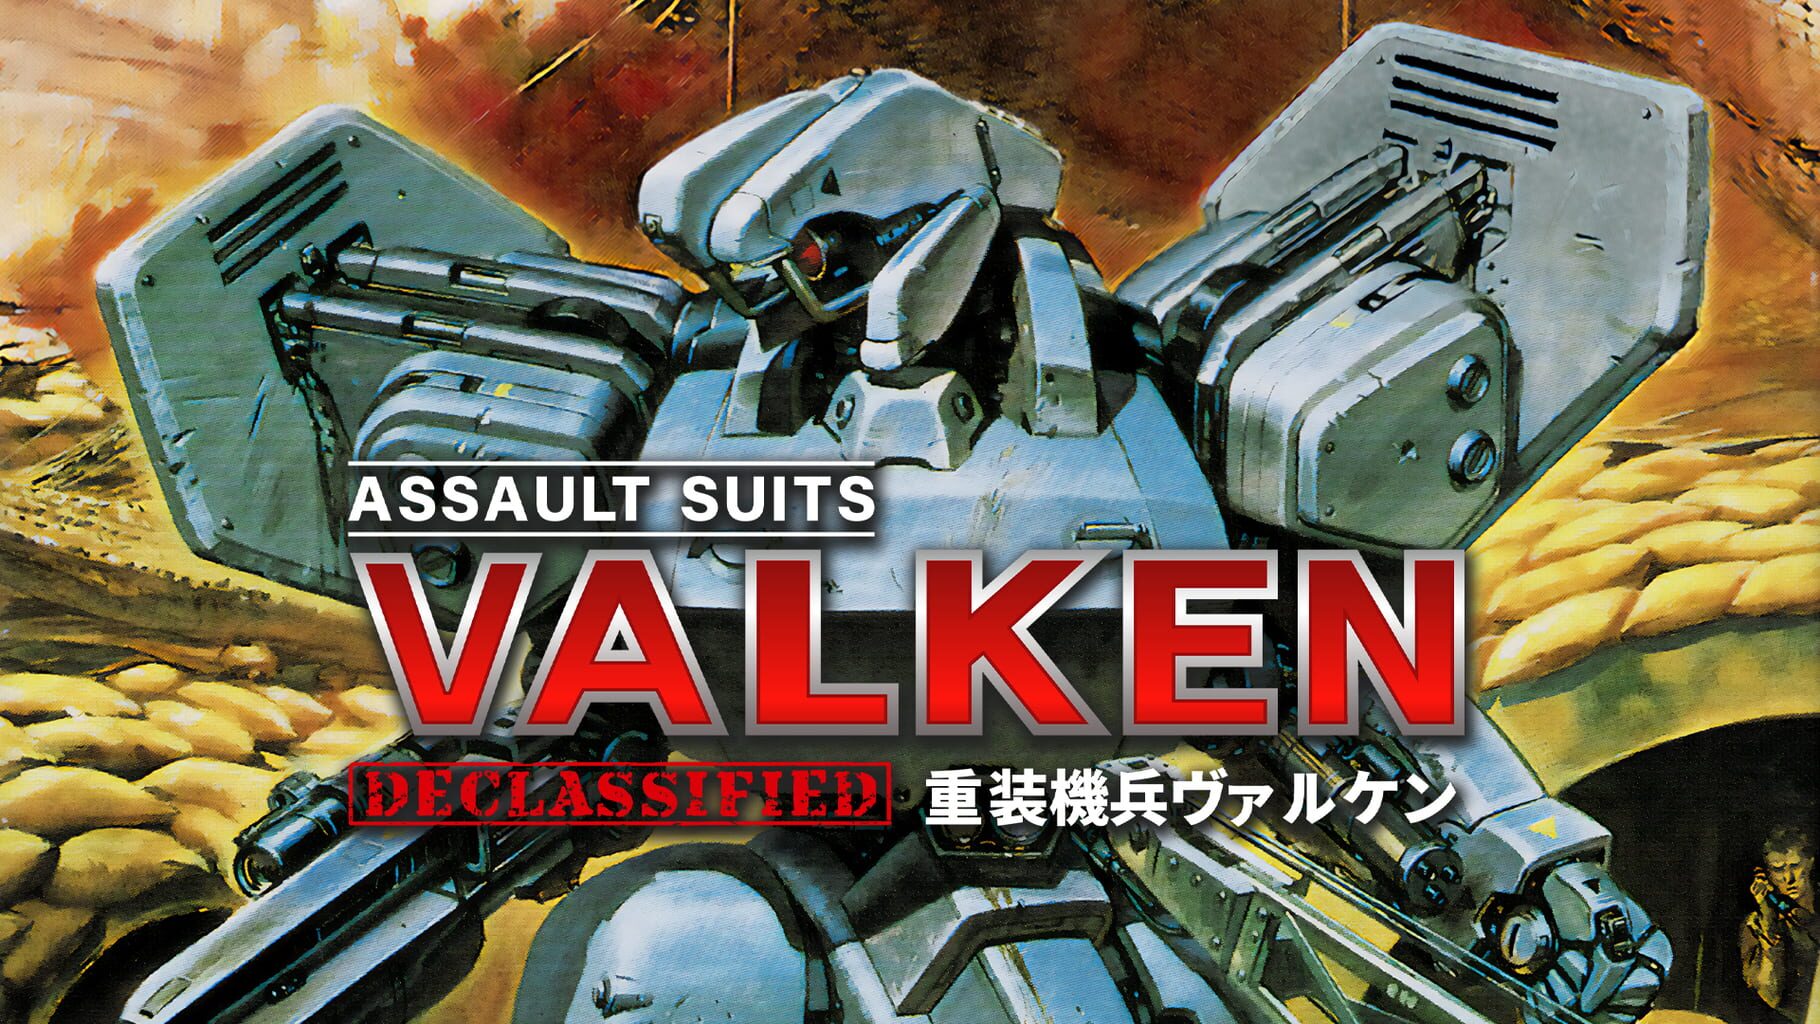 Assault Suits Valken Declassified artwork